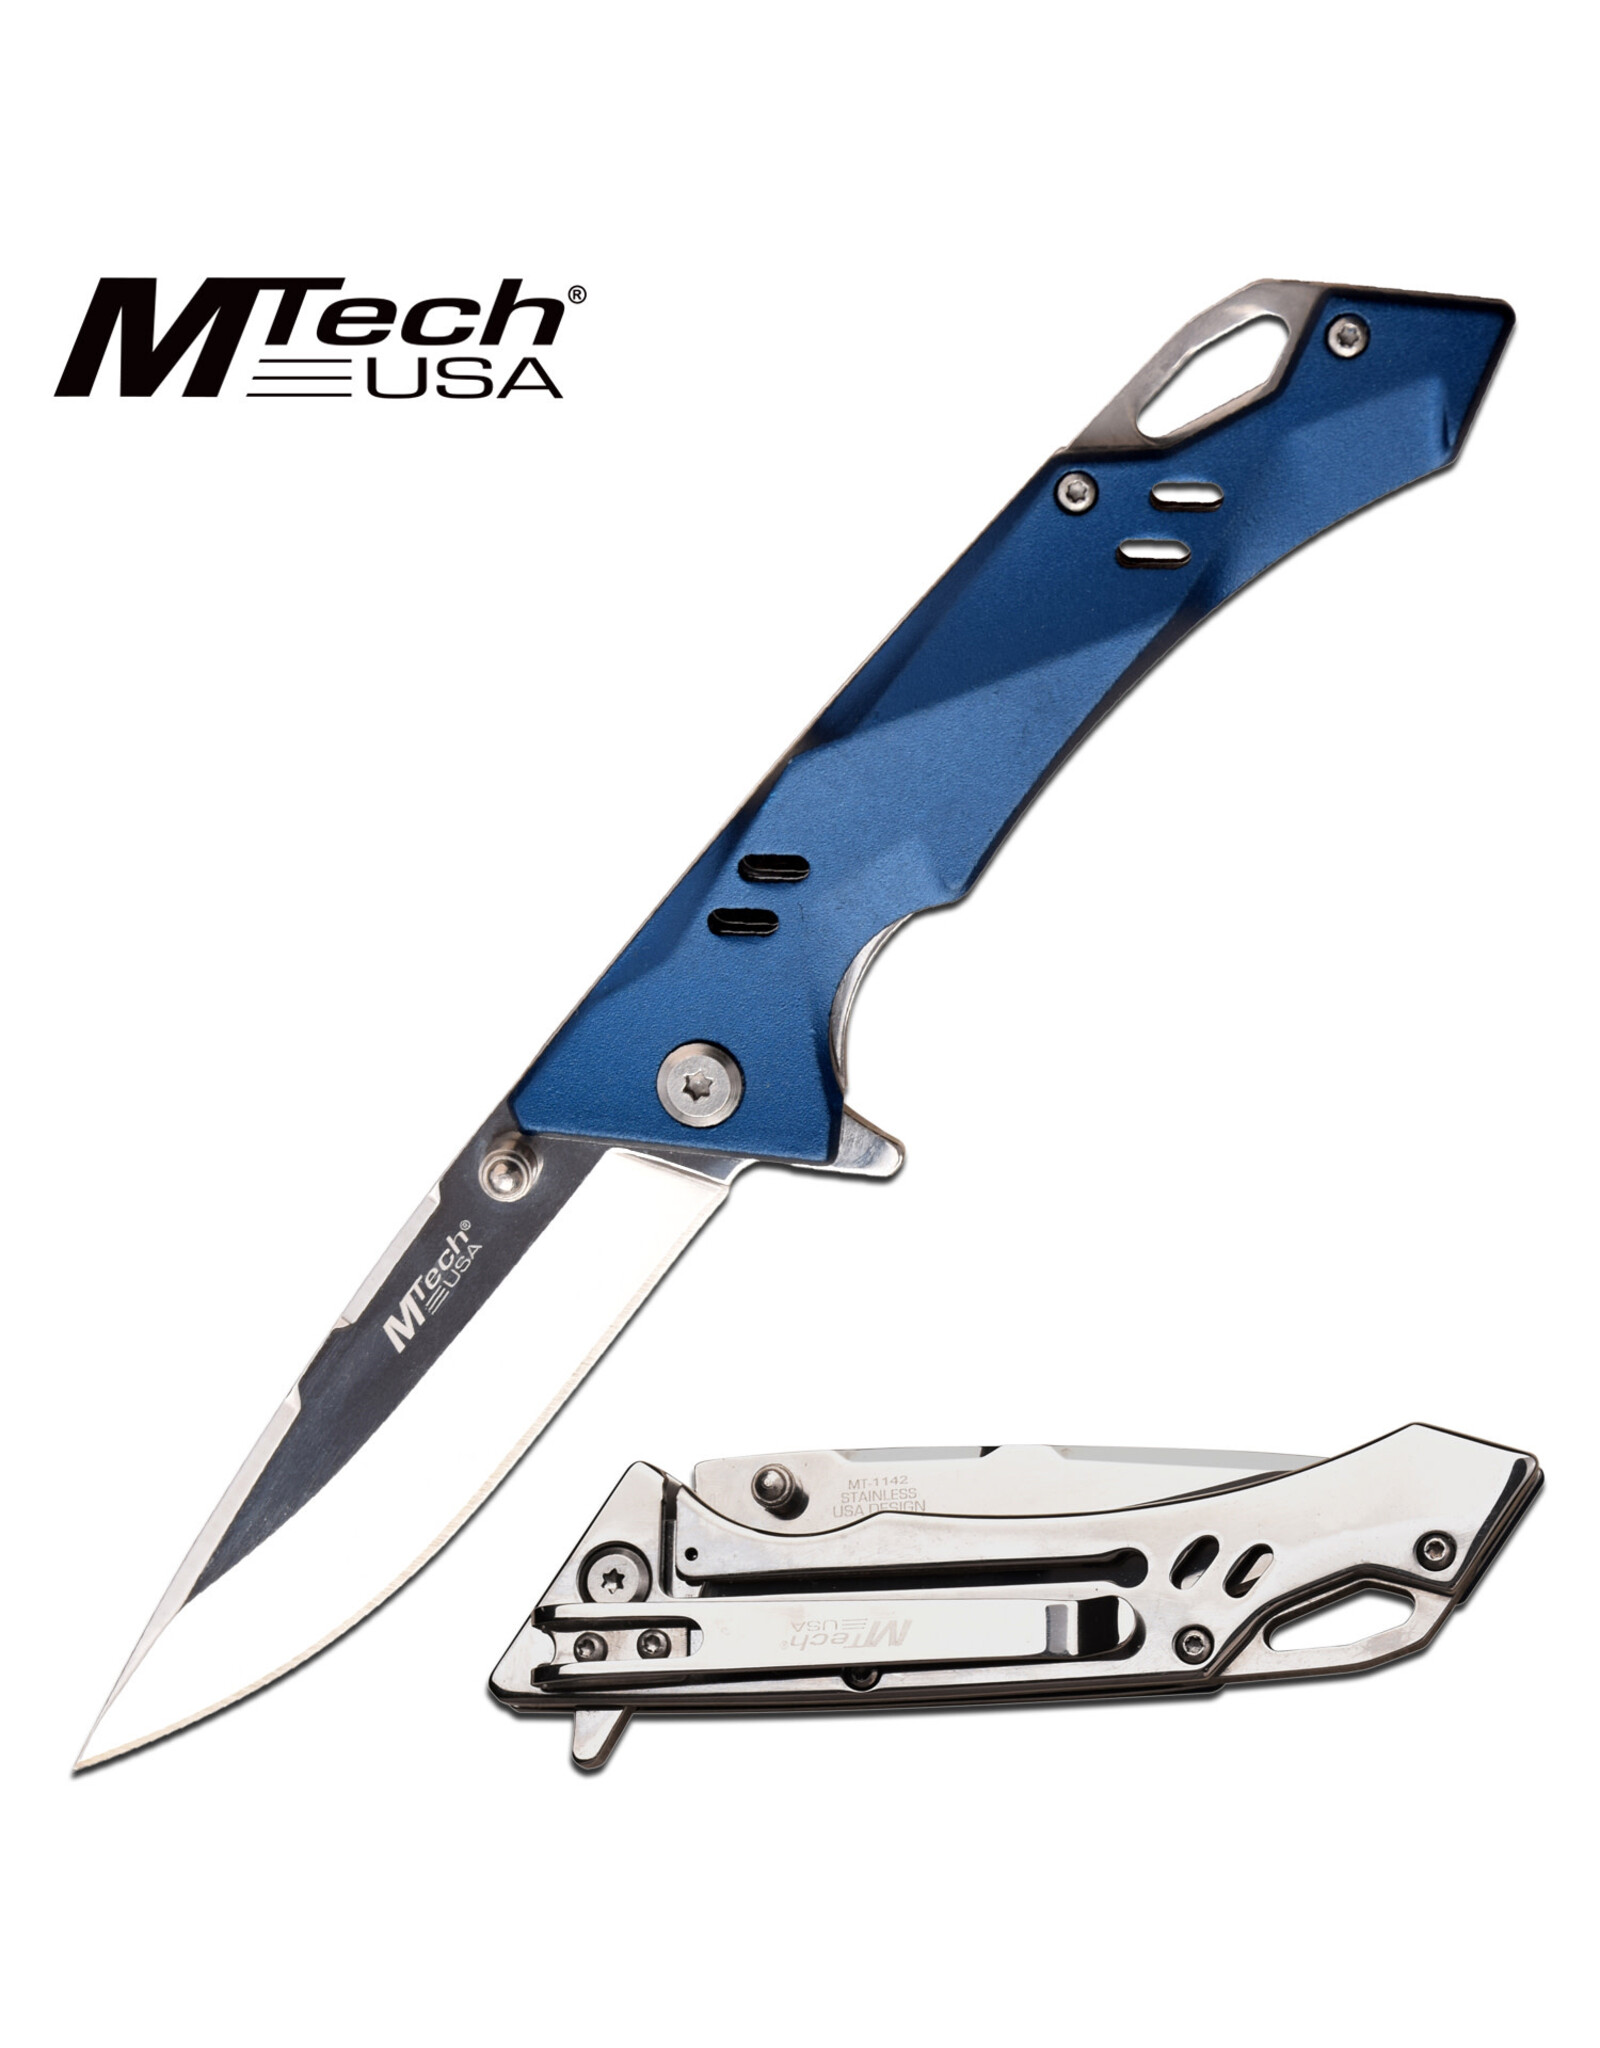 MTech Usa MTech USA Manual Folding Knife